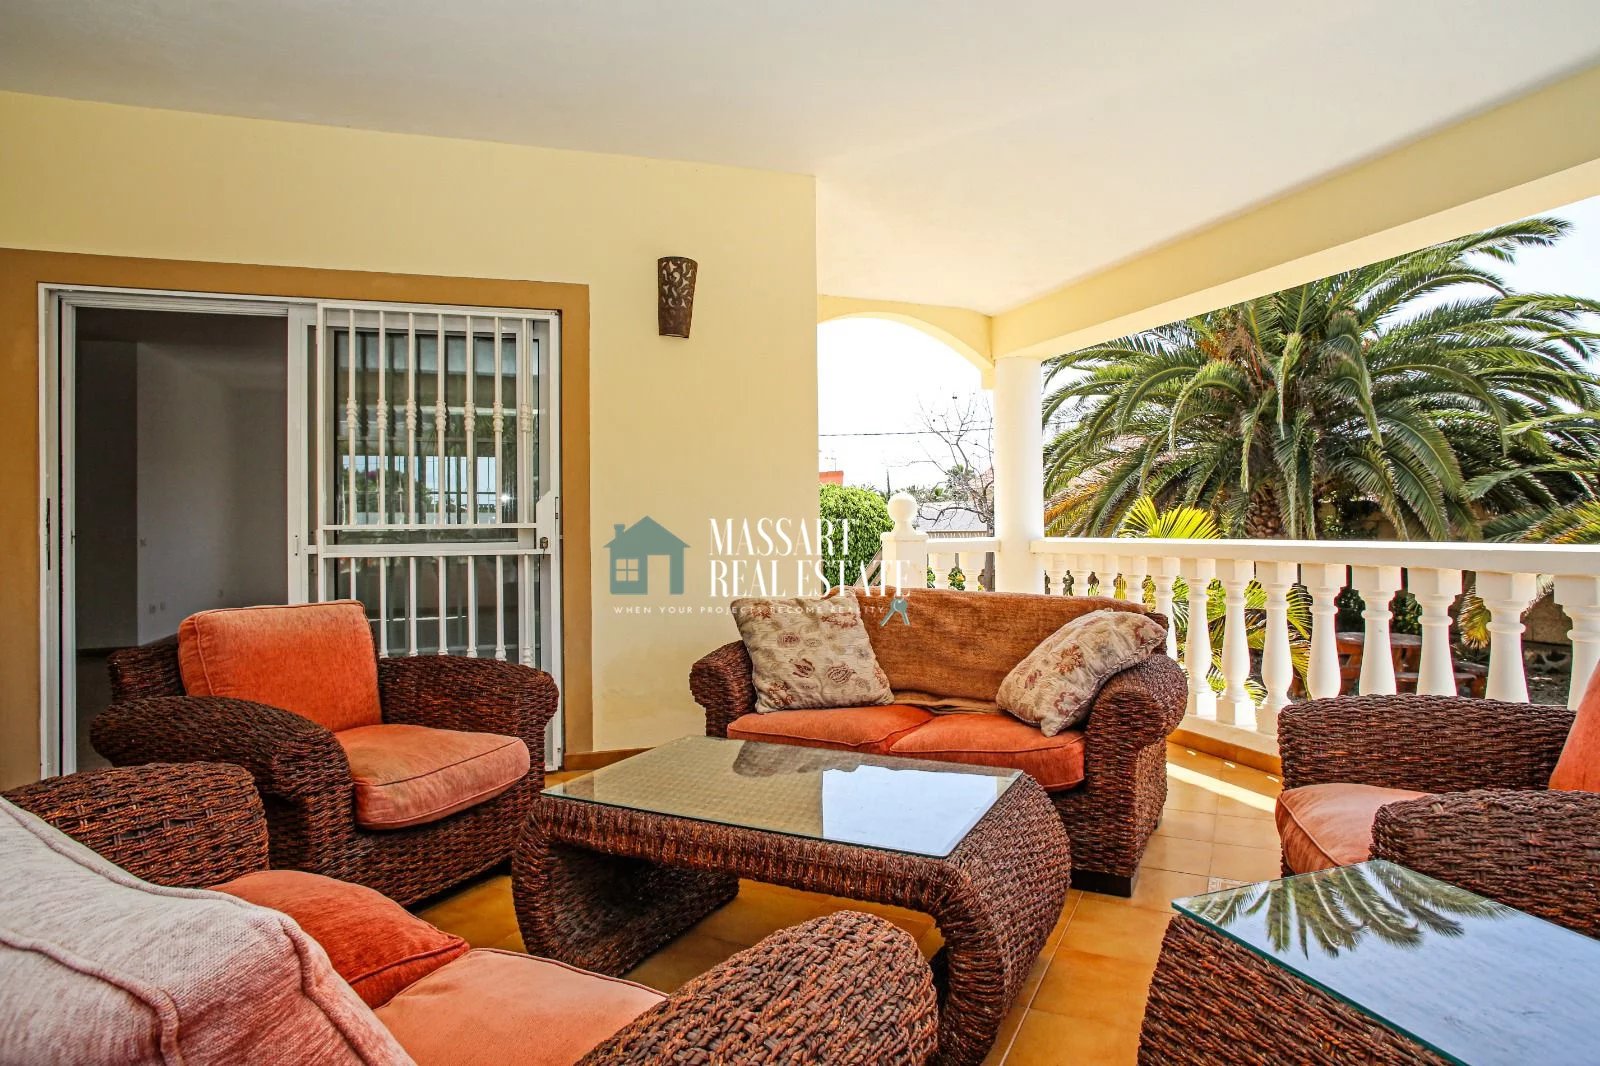 Villa señorial ubicada en una parcela de 1005 m2 en una zona de absoluta tranquilidad, en La Estrella.